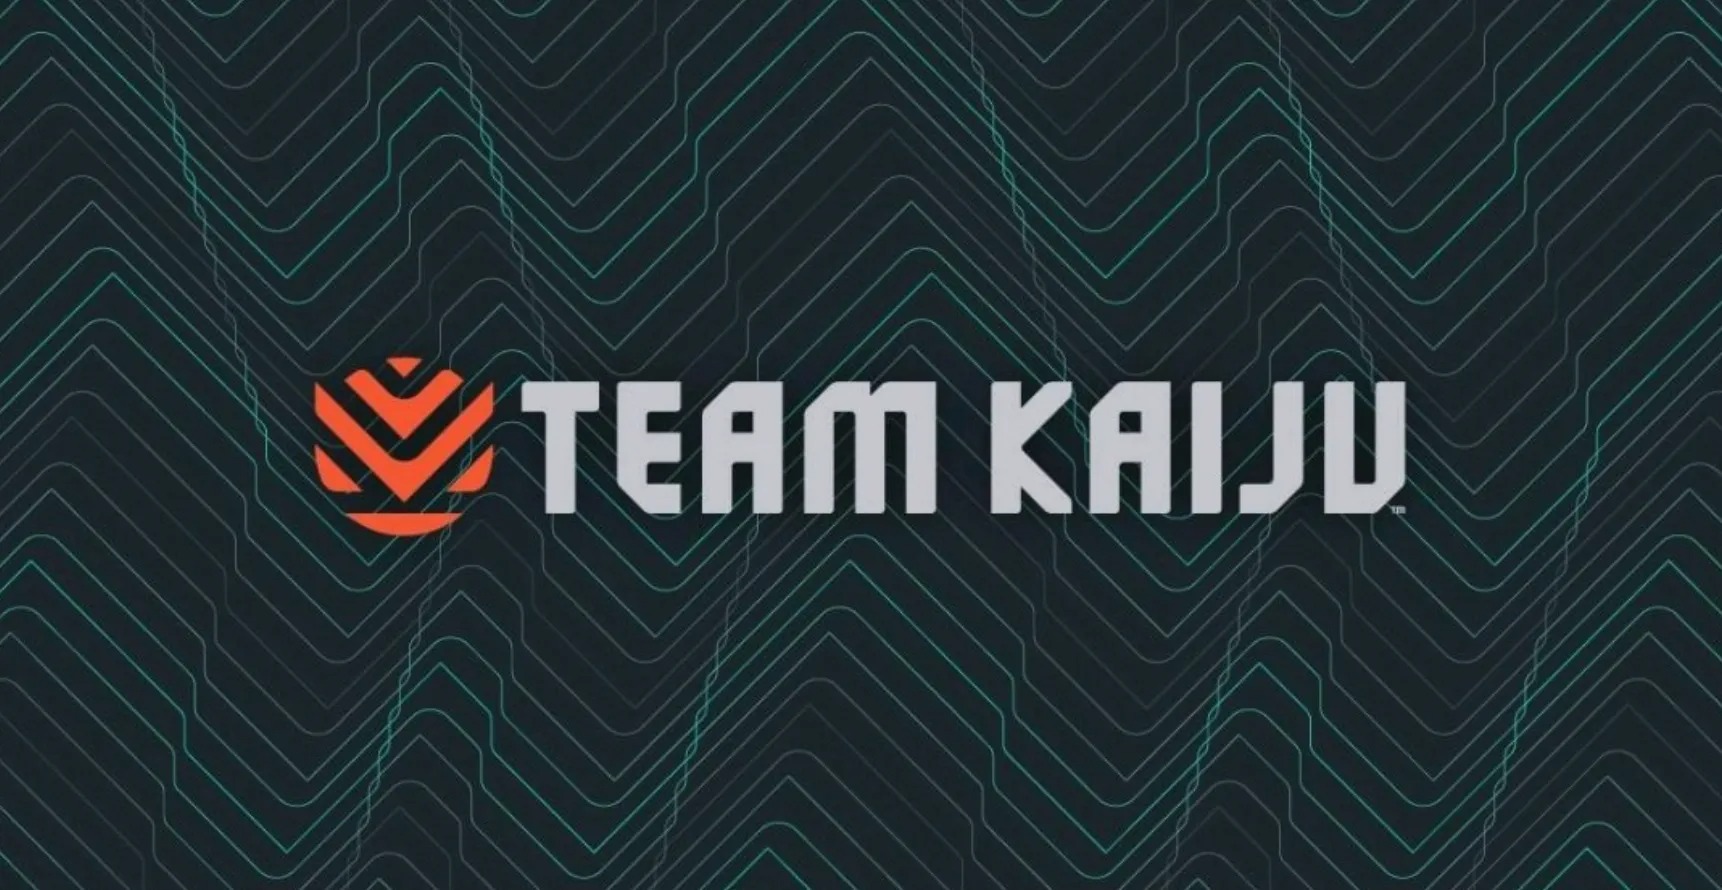 腾讯疑似关闭旗下3A多人游戏工作室Team Kaiju